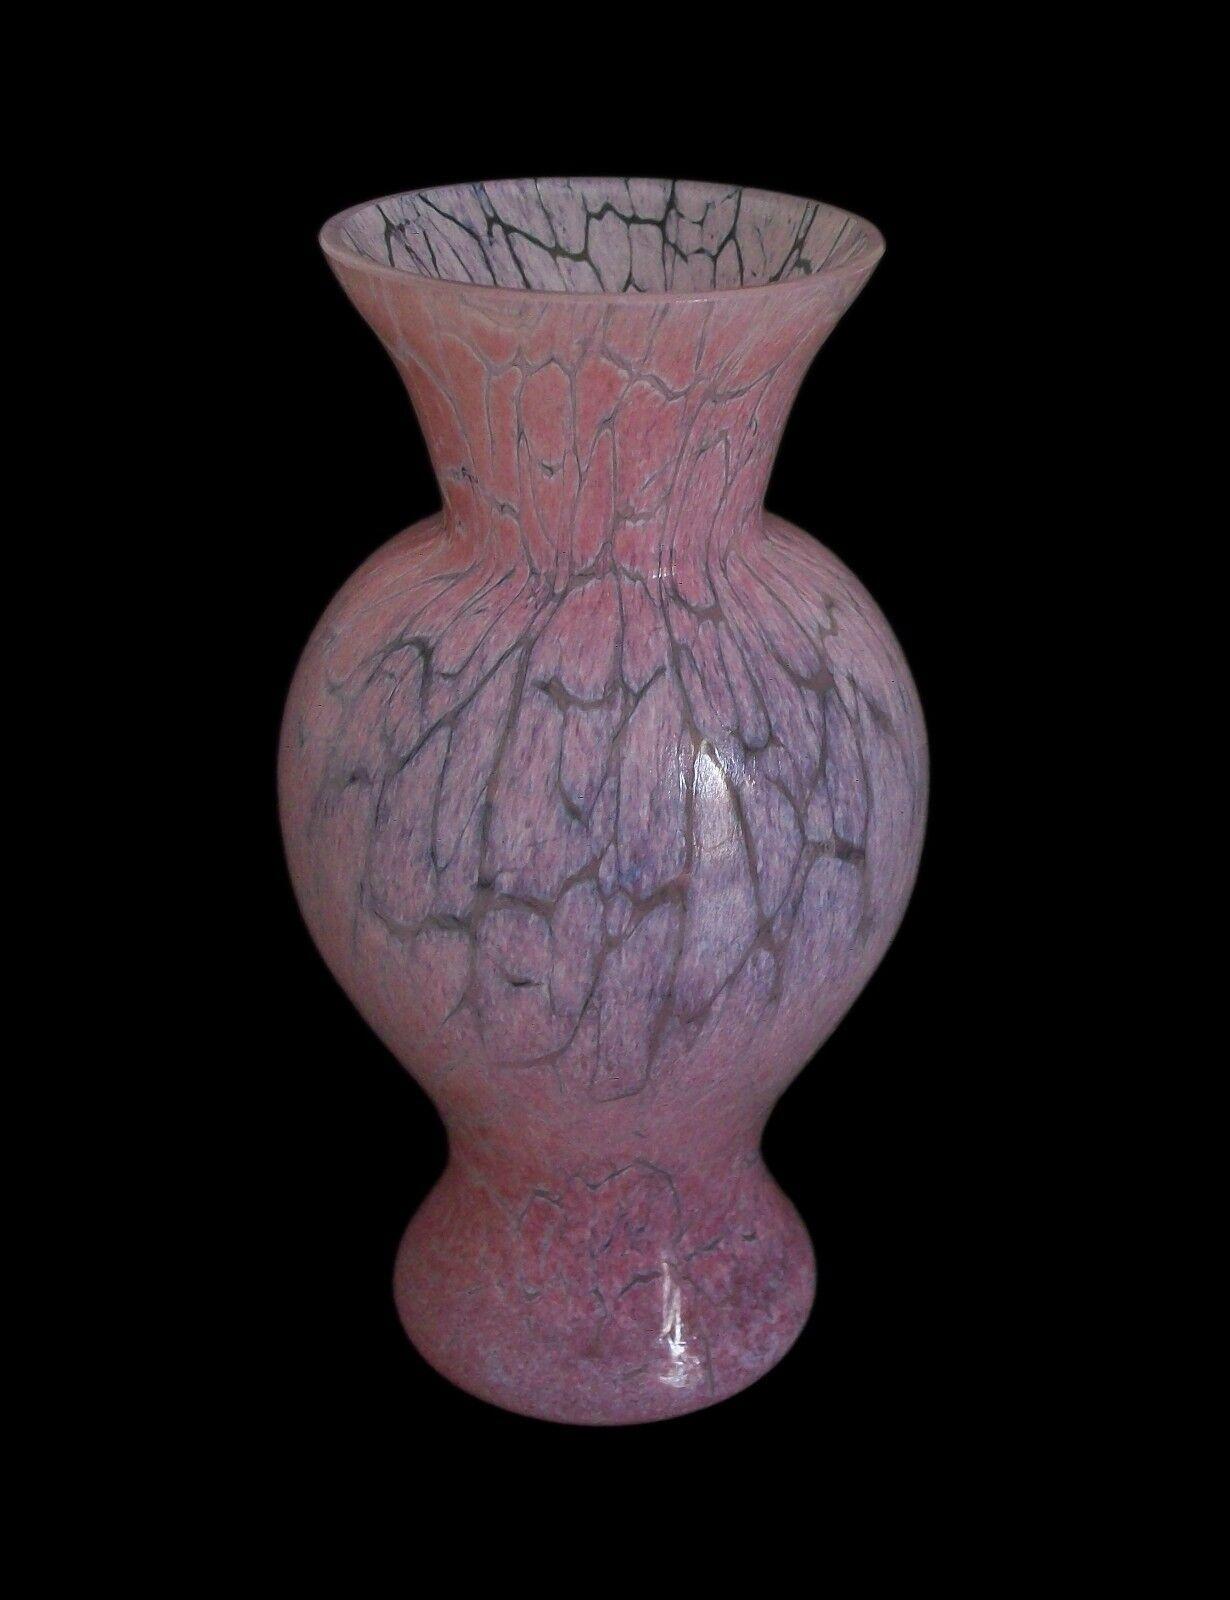 KOSTA BODA  Ulrica Hydman-Vallien (Design - b.1938) - Vase en verre craquelé rose du milieu du siècle - soufflé à la main - signé - Suède - circa 1970's.

Excellent état vintage - pas de perte - pas de dommage - pas de restauration - signes minimes